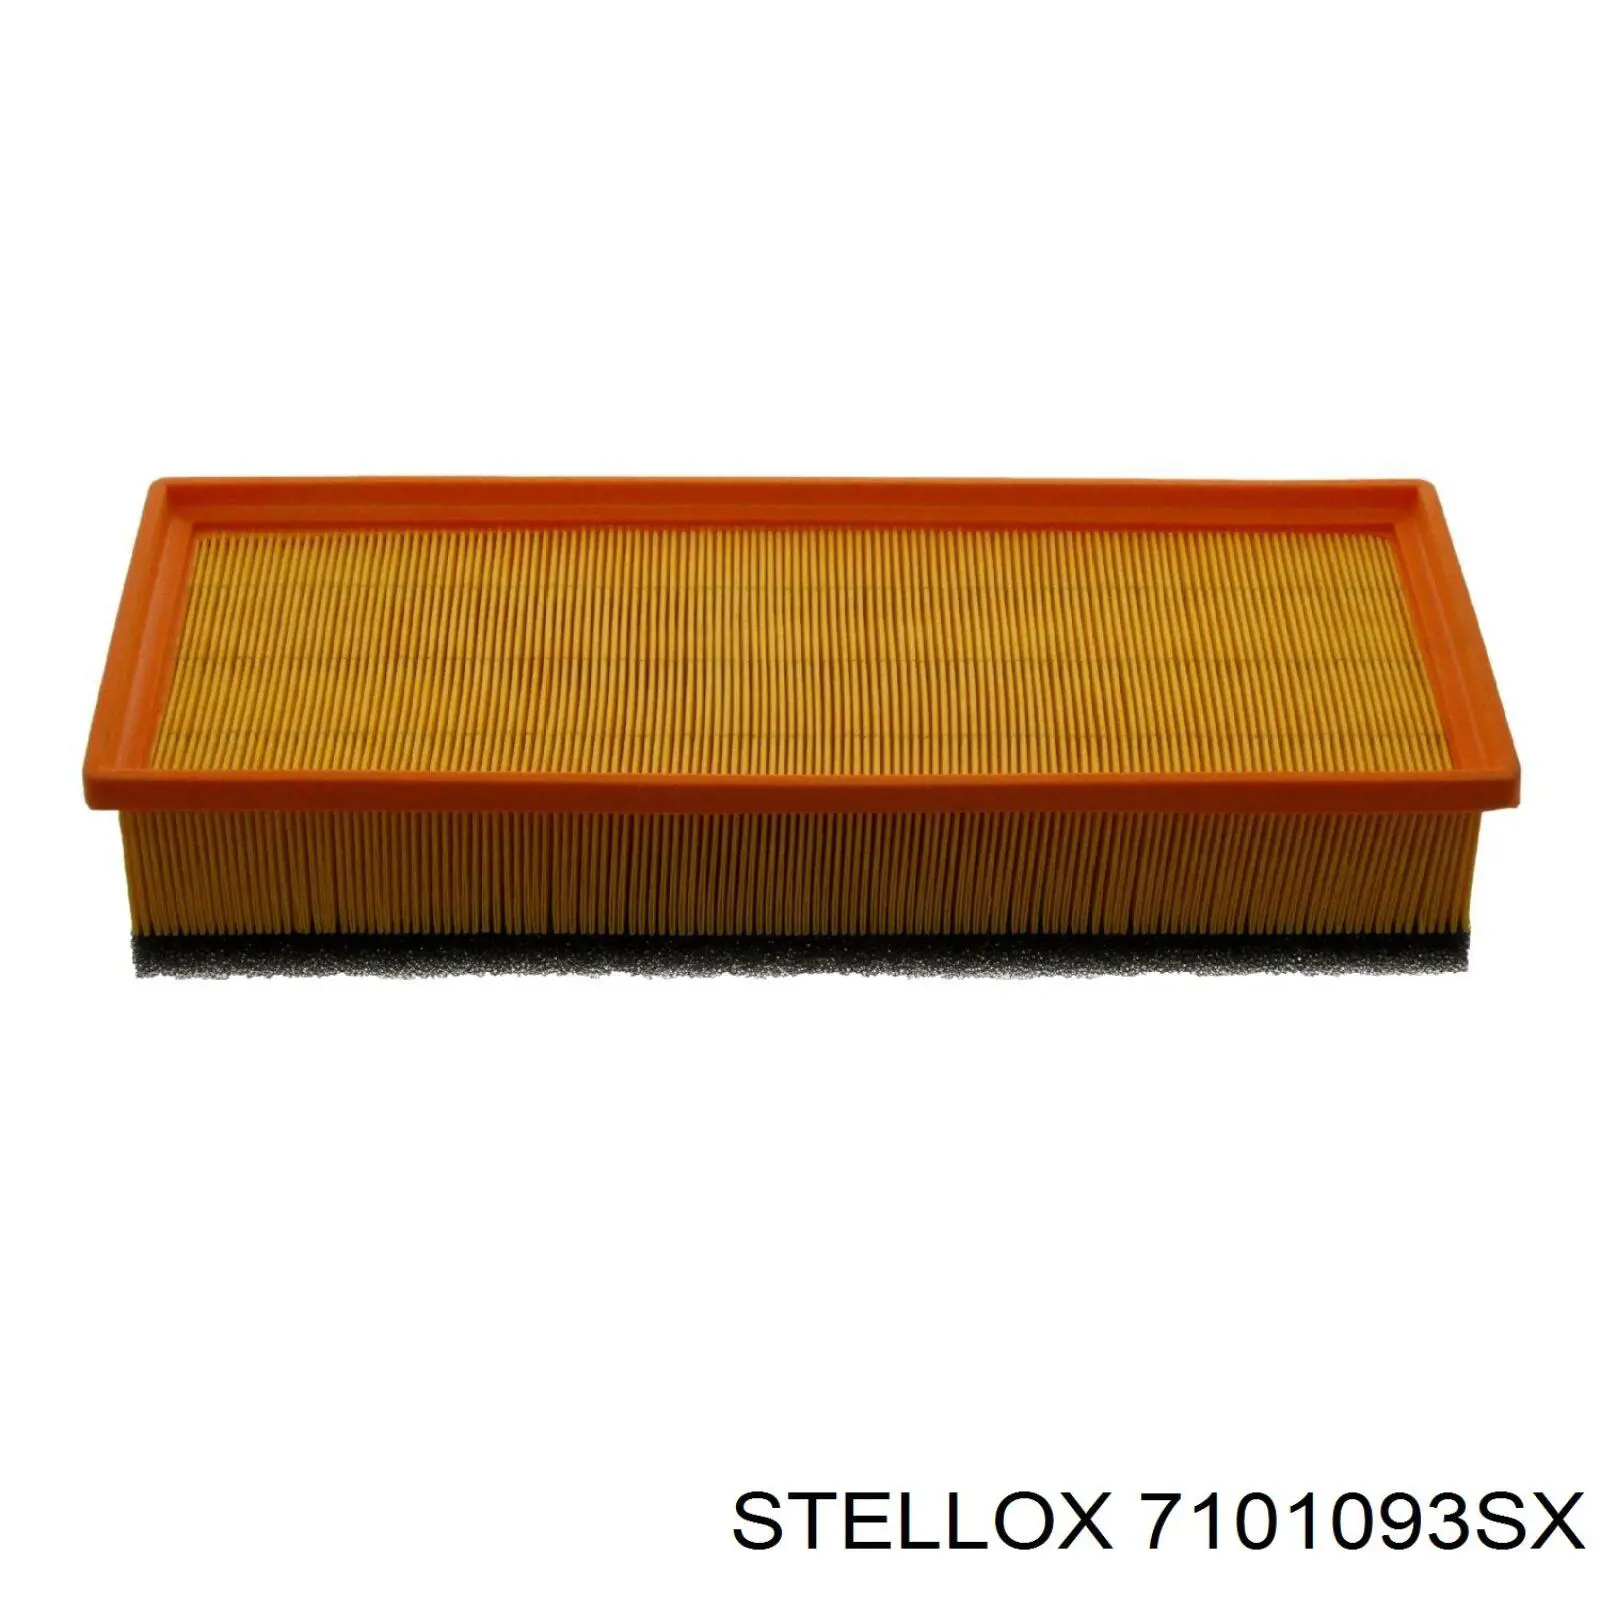 7101093SX Stellox filtro de aire